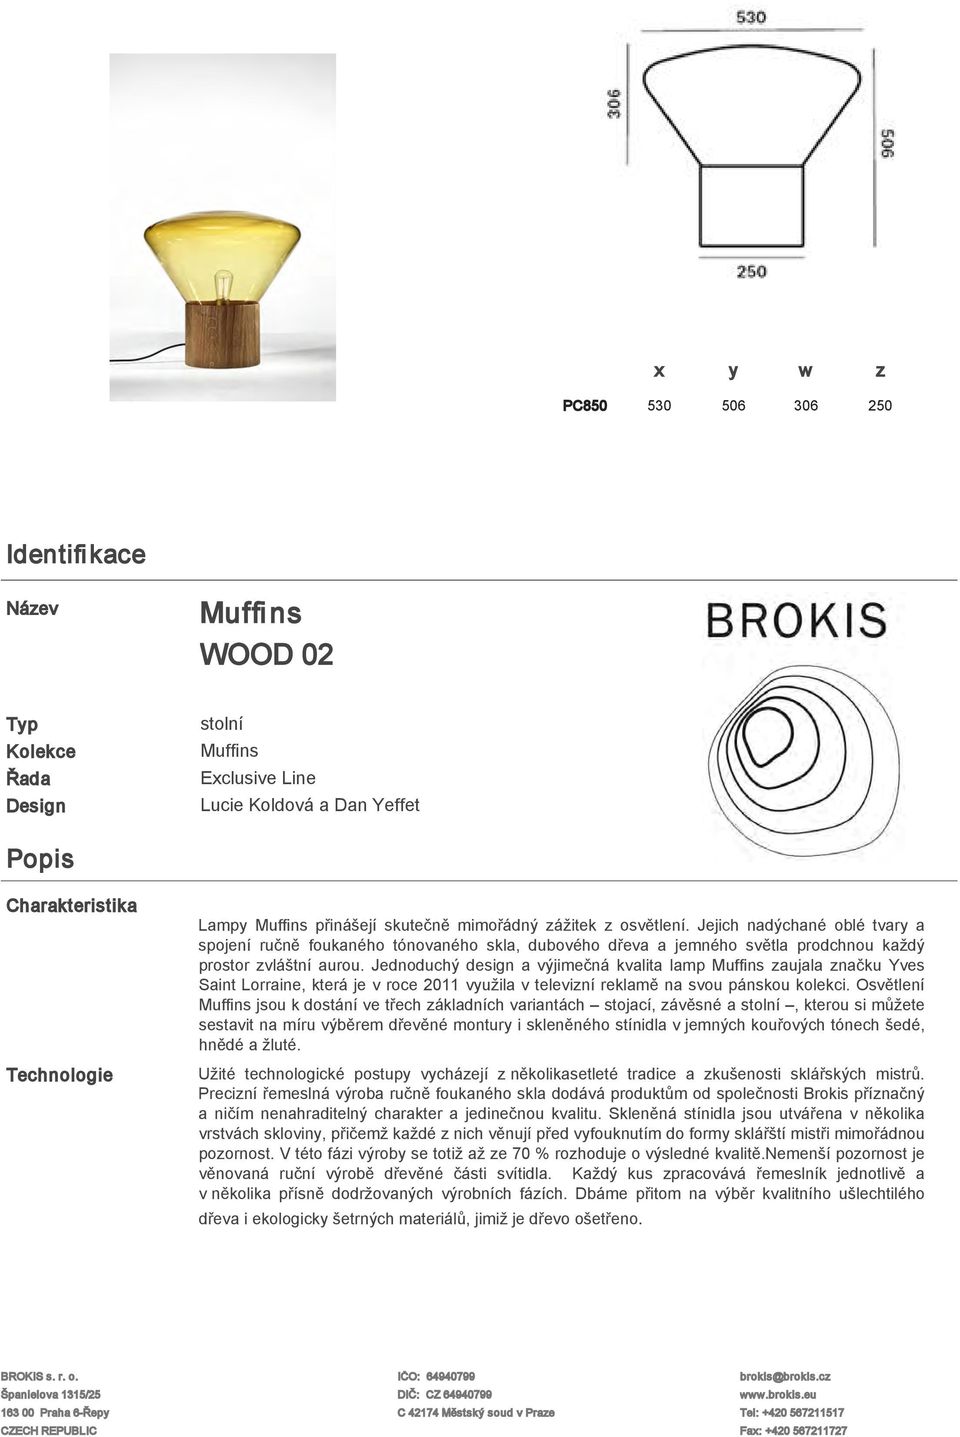 Jednoduchý design a výjimečná kvalita lamp Muffins zaujala značku Yves Saint Lorraine, která je v roce 2011 využila v televizní reklamě na svou pánskou kolekci.